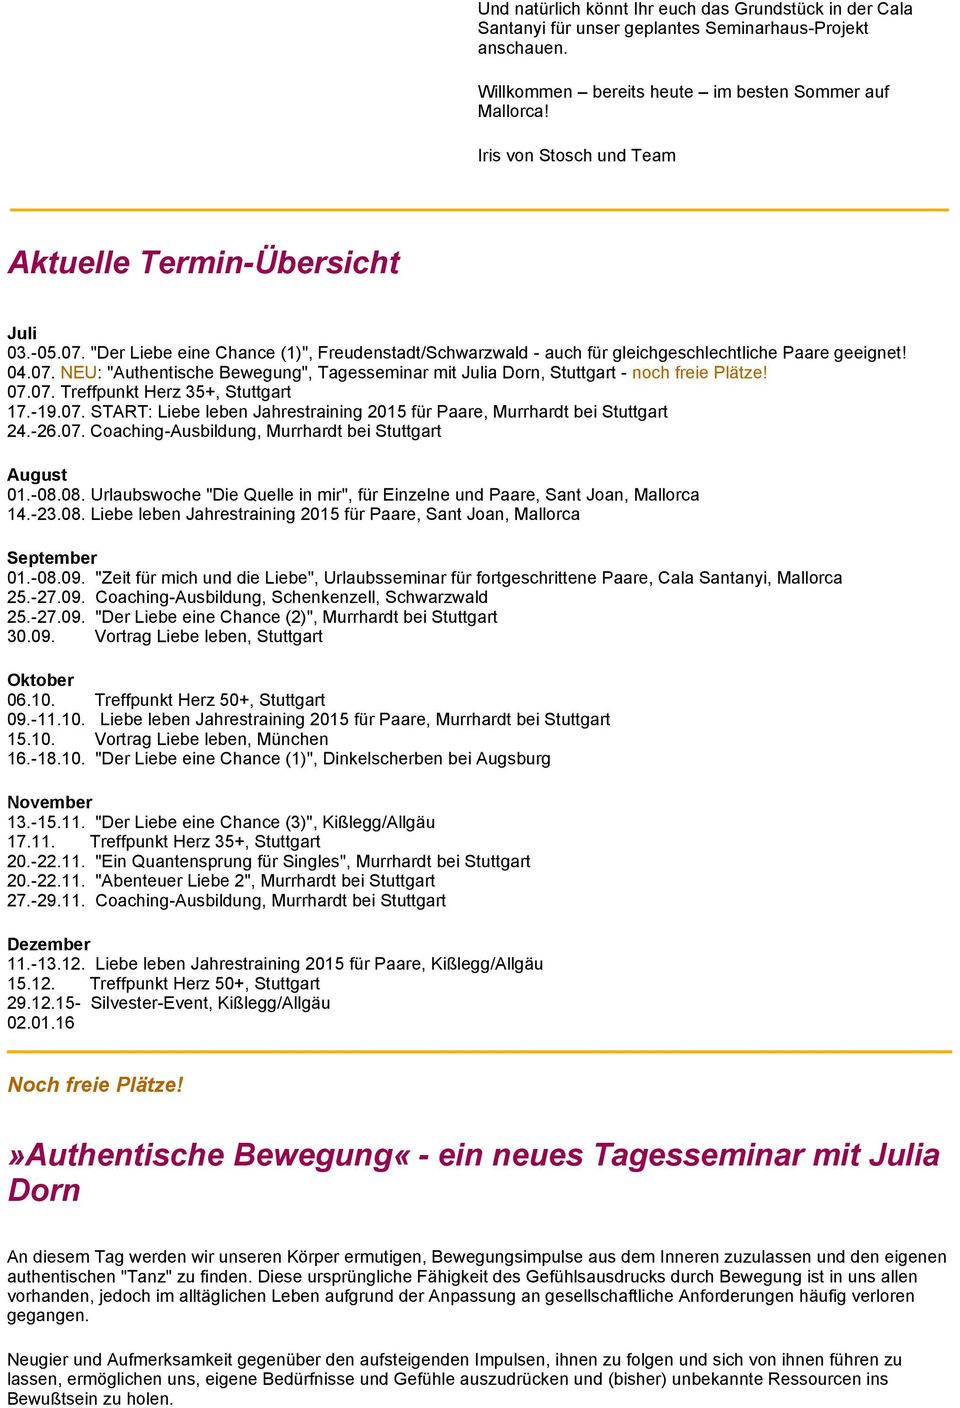 07.07. Treffpunkt Herz 35+, Stuttgart 17.-19.07. START: Liebe leben Jahrestraining 2015 für Paare, Murrhardt bei Stuttgart 24.-26.07. Coaching-Ausbildung, Murrhardt bei Stuttgart August 01.-08.